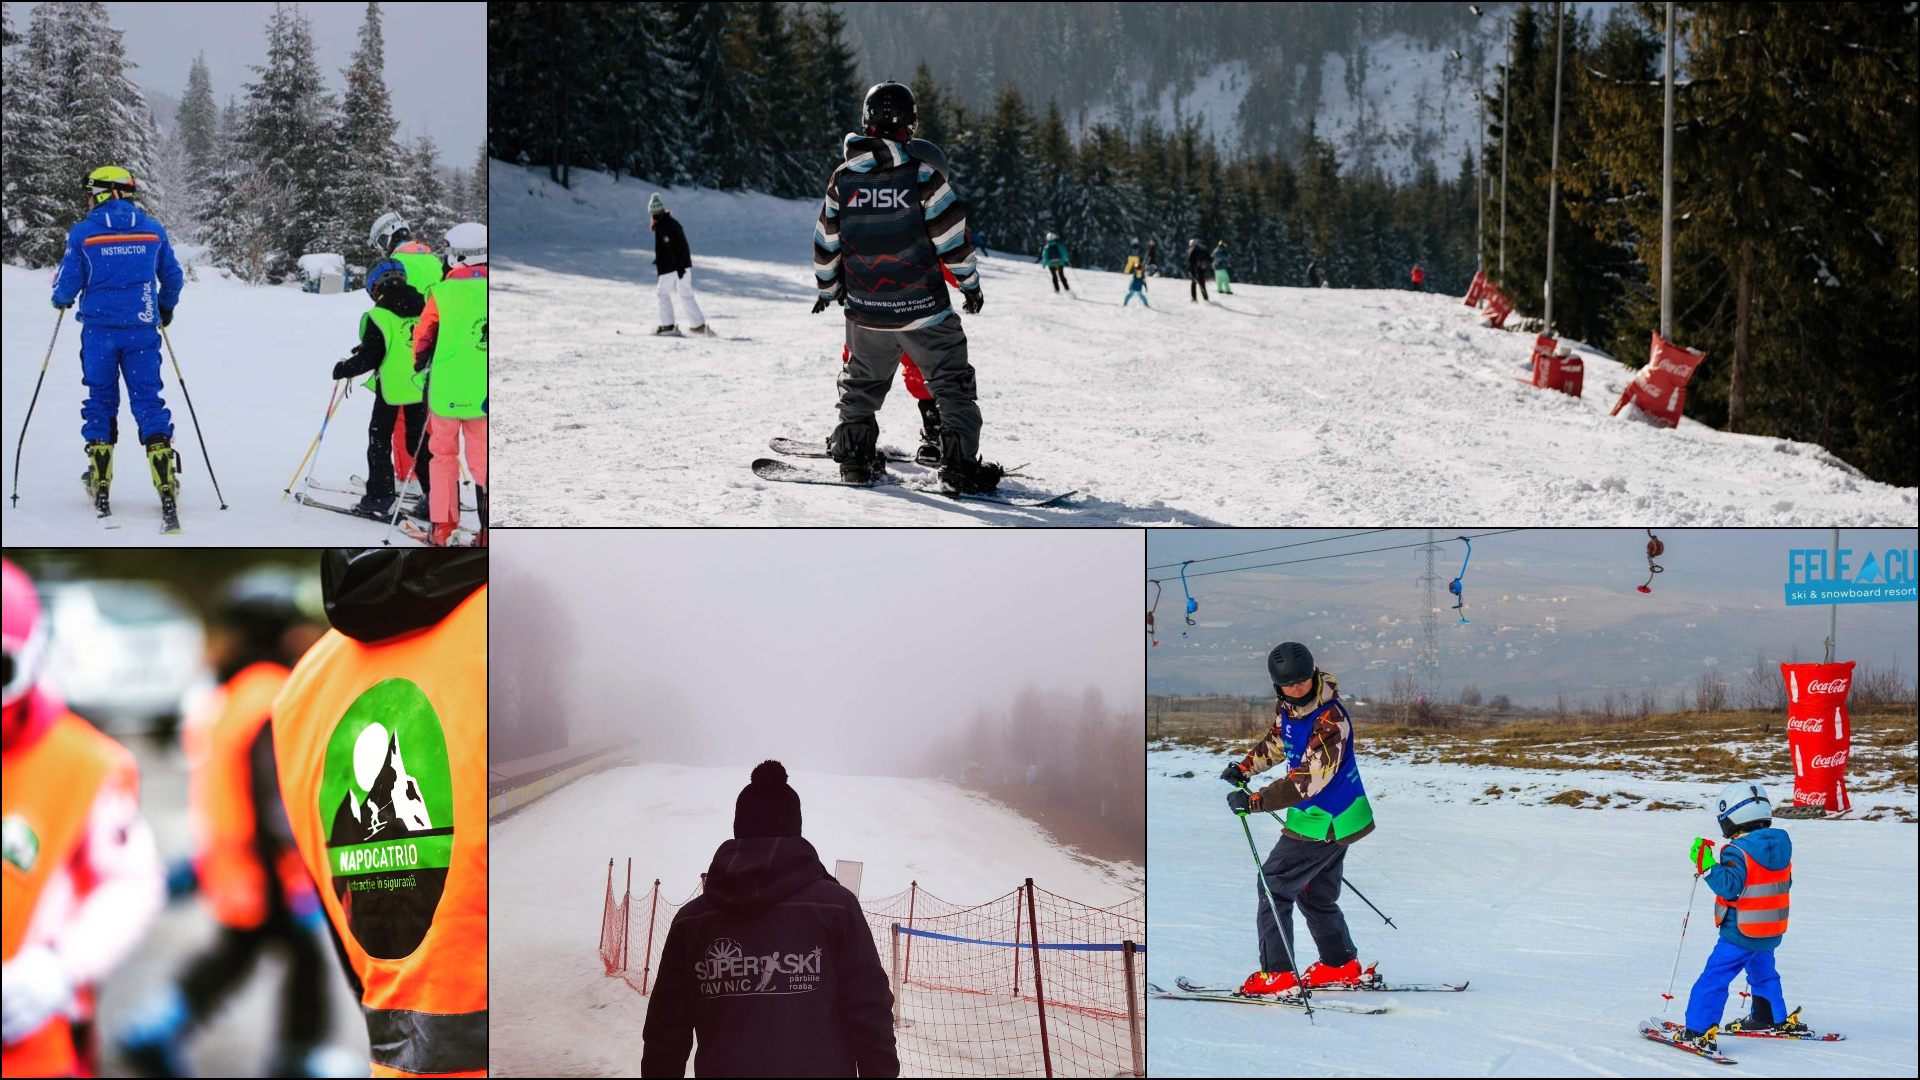 Instructori și școli de ski sau snowboard în apropiere de Cluj